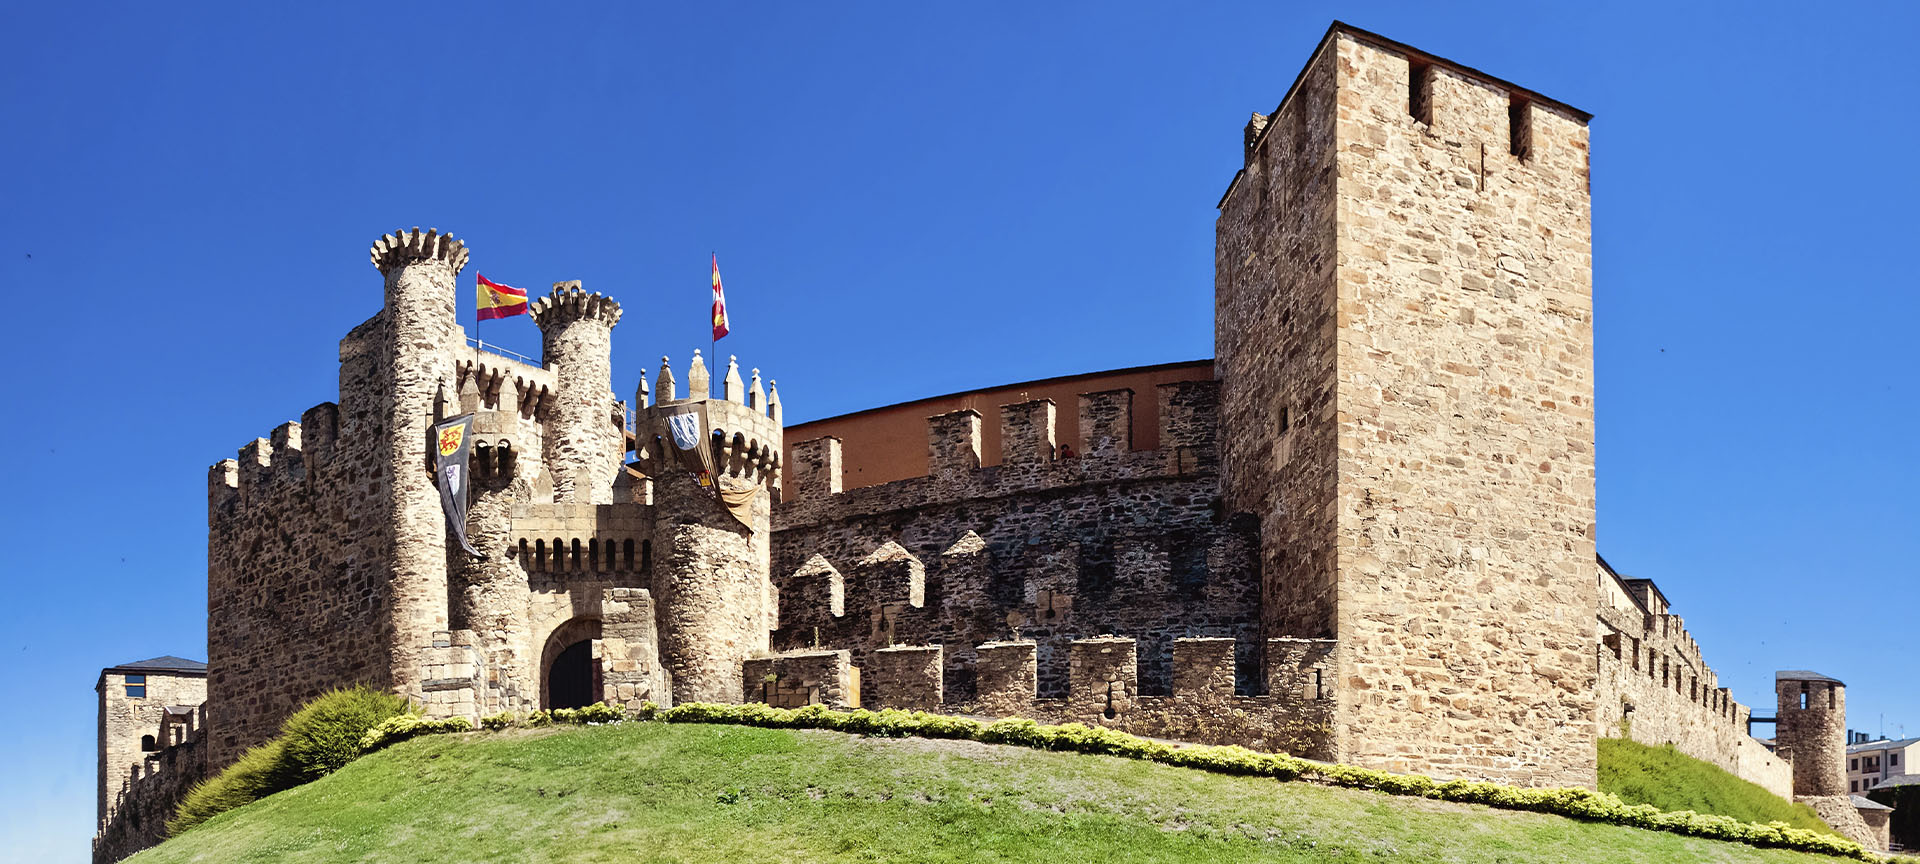 Visita guiada de la mano de guías oficiales de León, en el que descubrirás el Castillo de los Templarios y la ciudad de Ponferrada. Historia, arte, leyendas y personajes históricos, te aguardan.